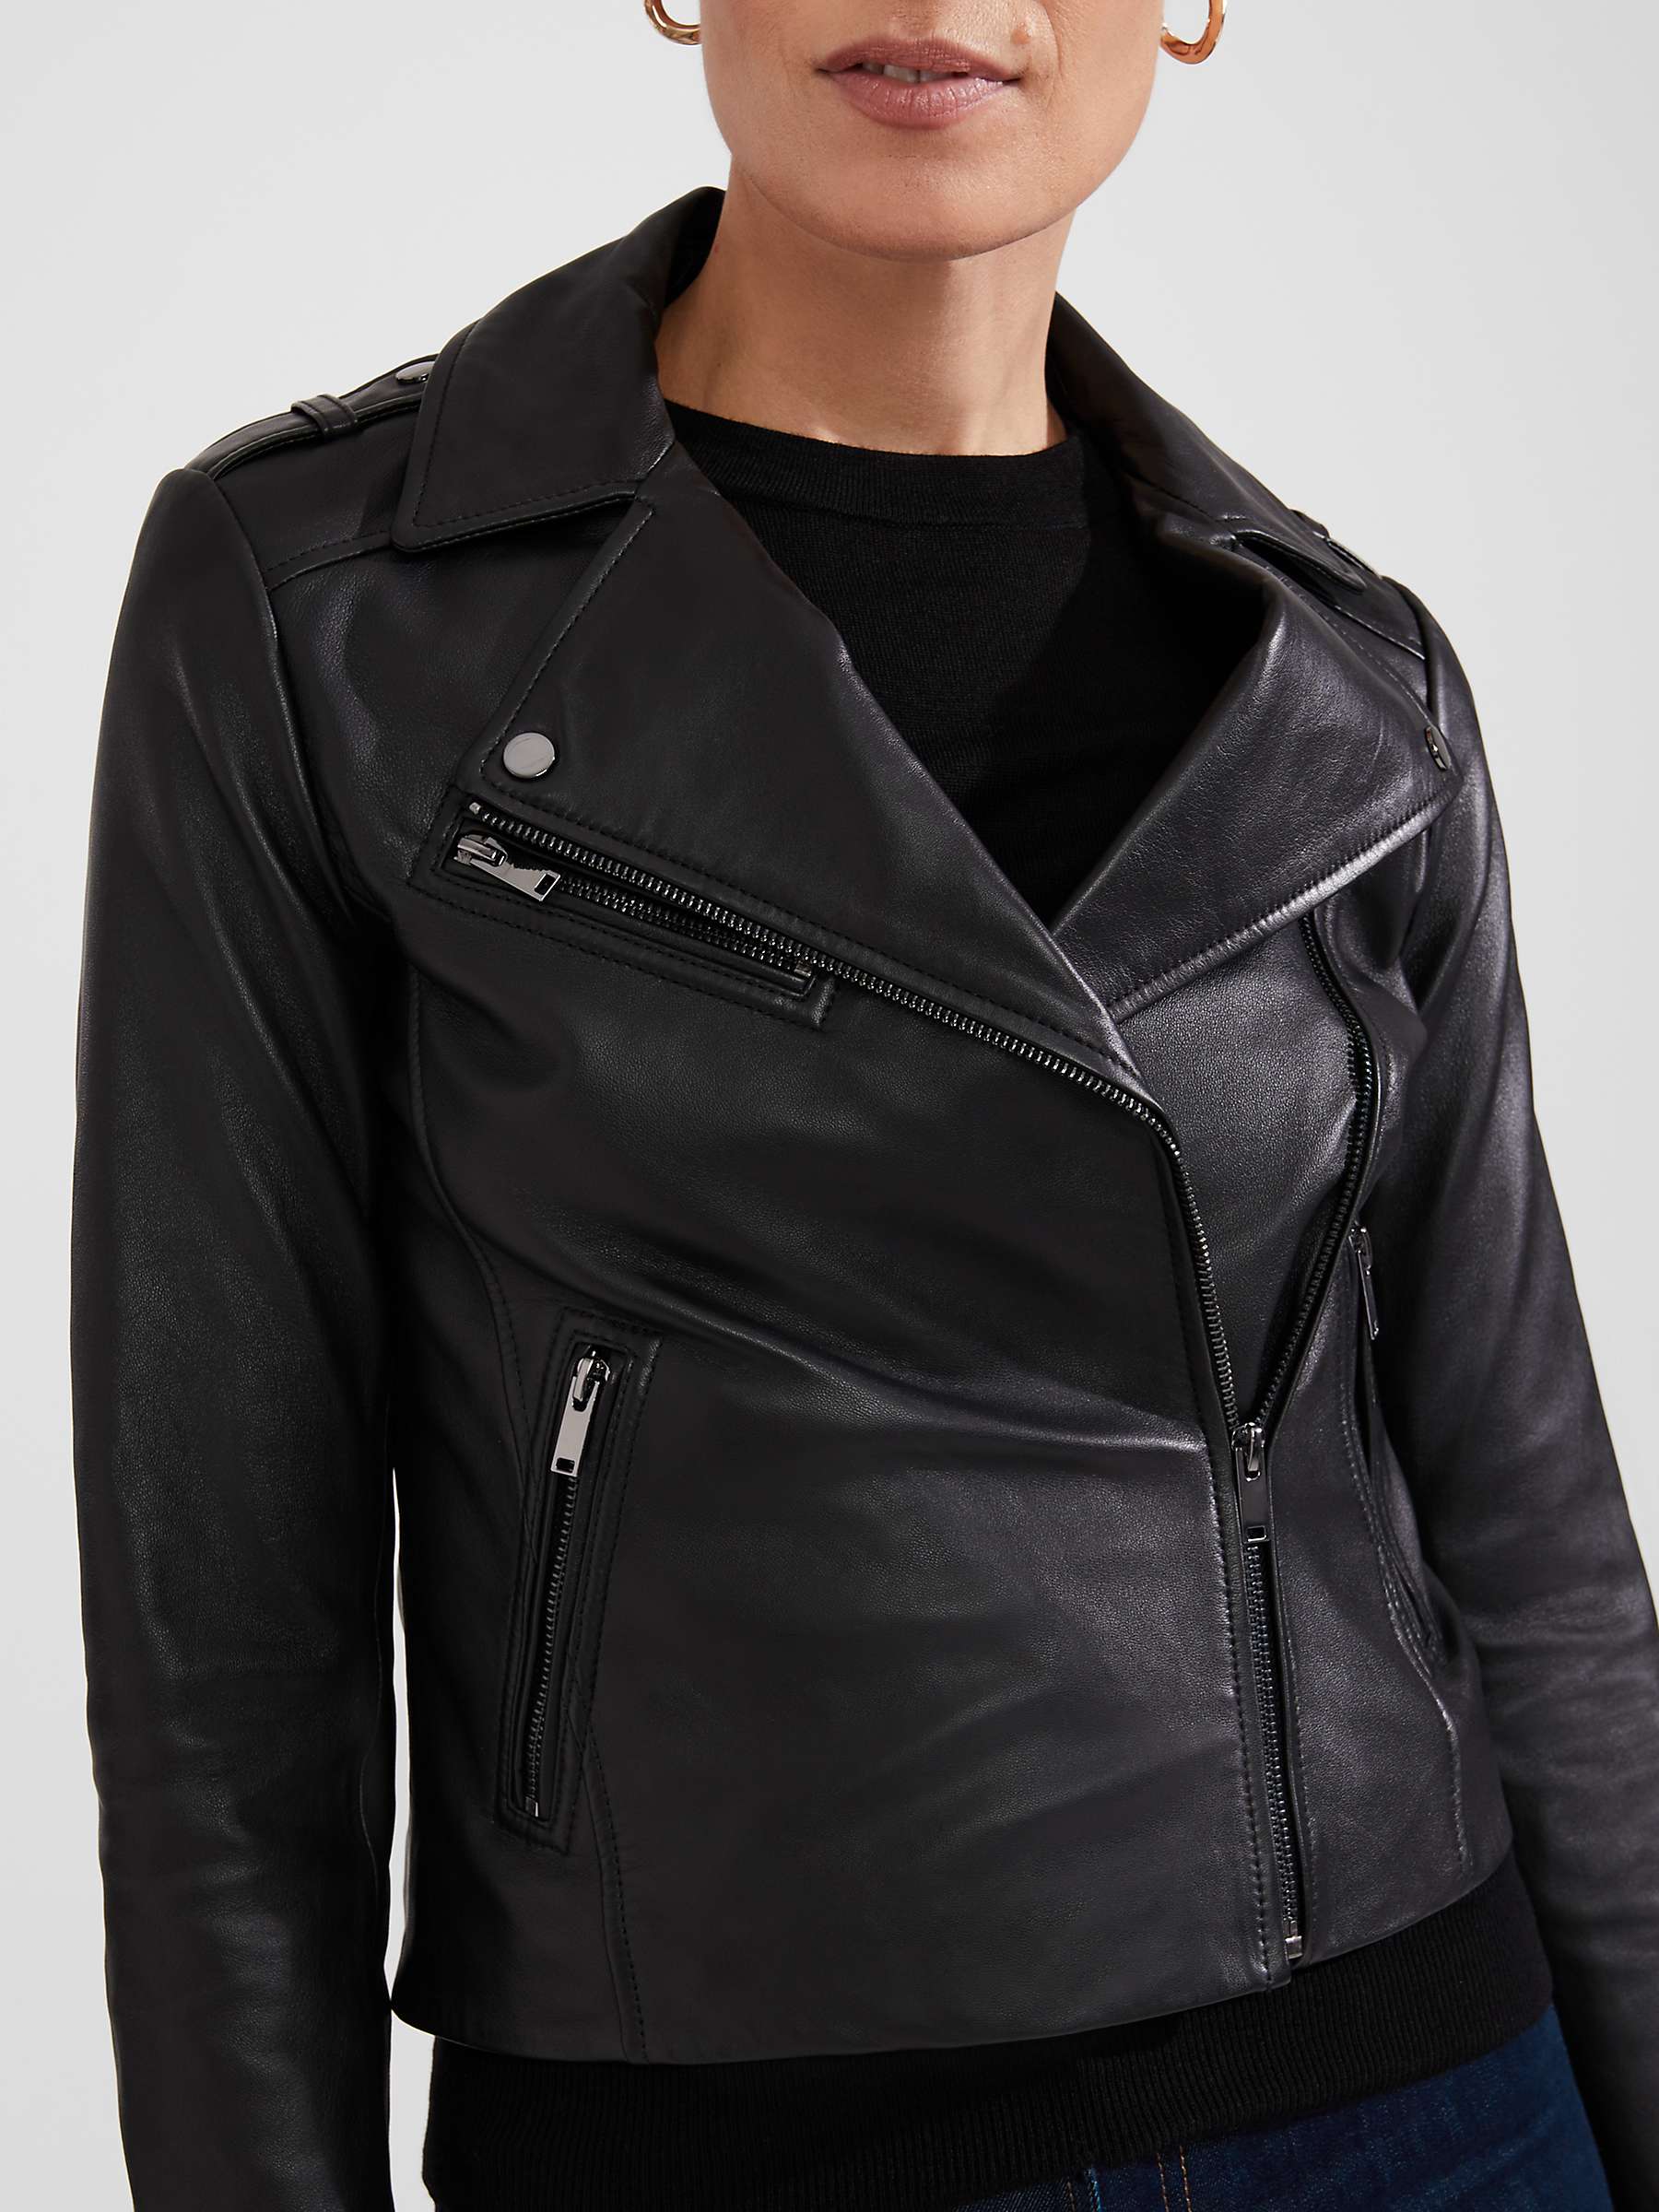 Buy Hobbs Darby Leather Jacket, Black Online at johnlewis.com